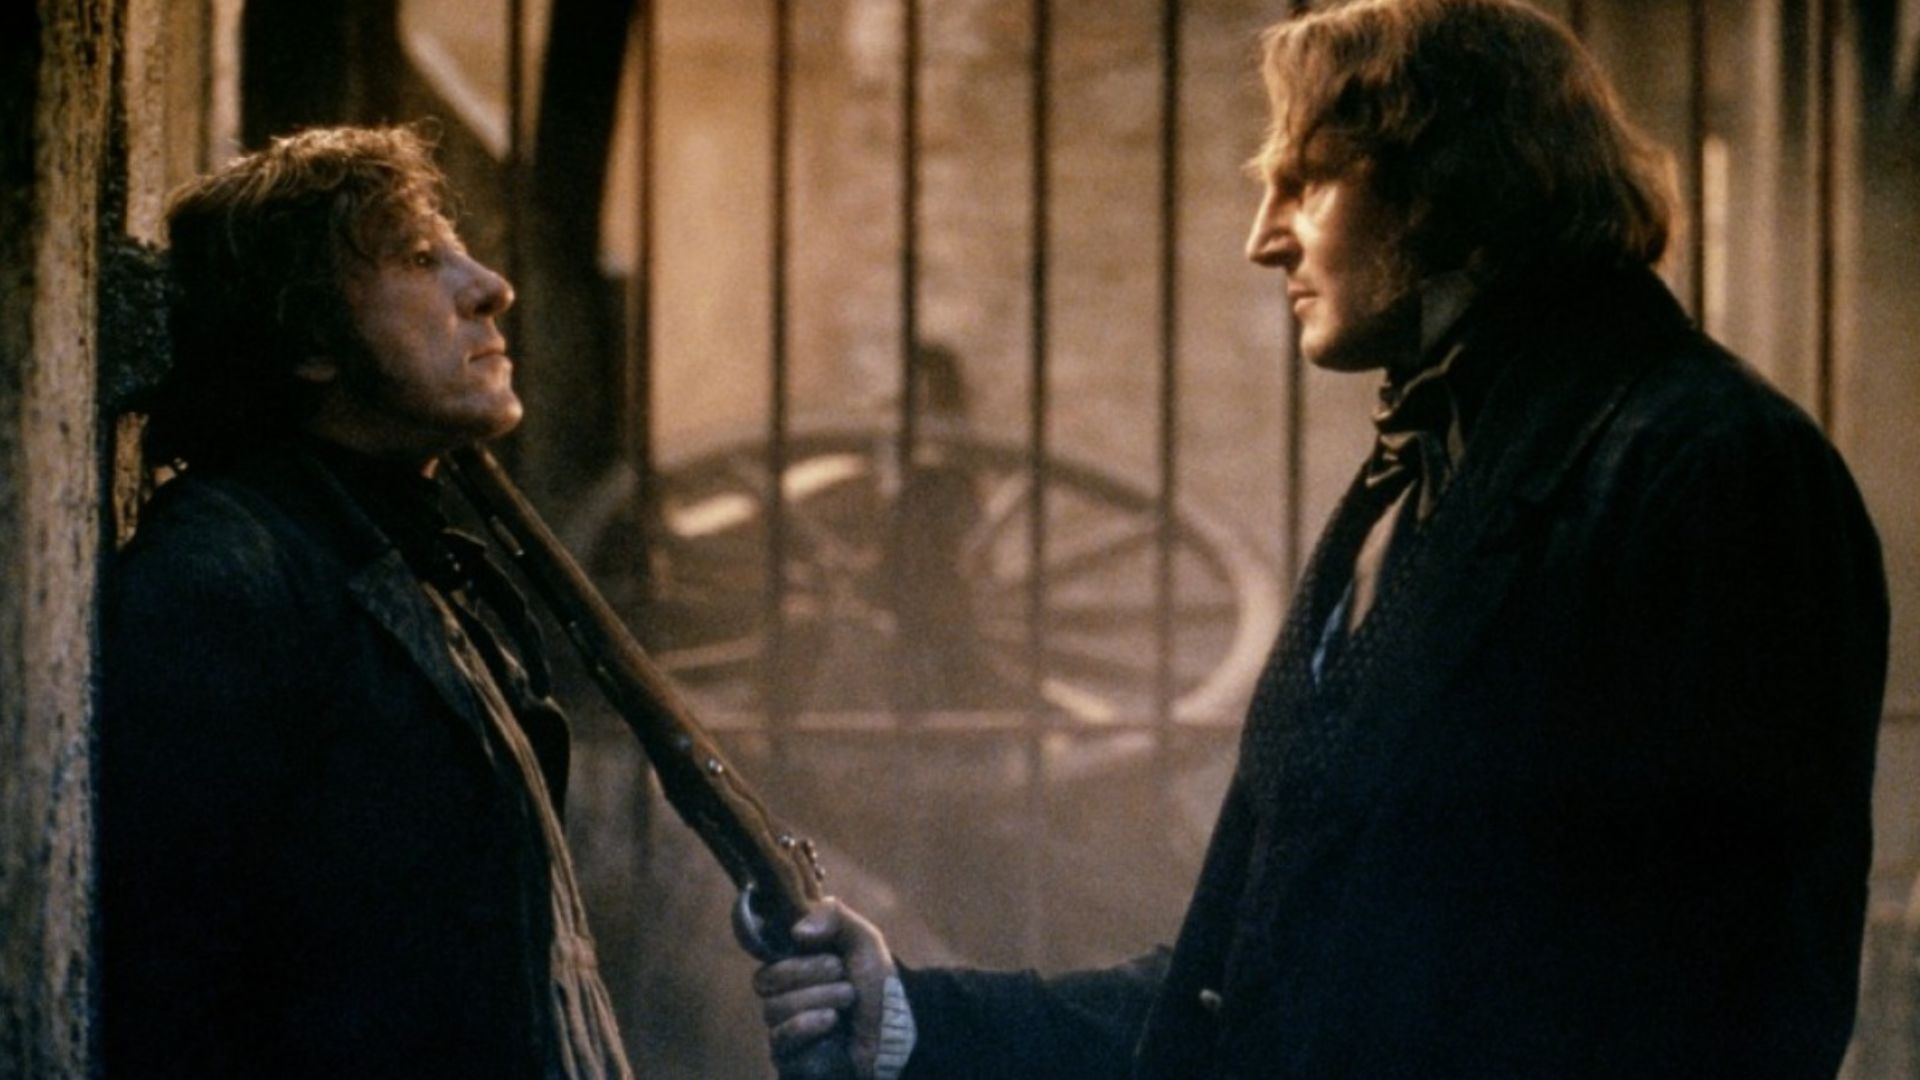 لیام نیسون در فیلم Les Misérables زیر گلوی جفری راش اسلحه گرفته است